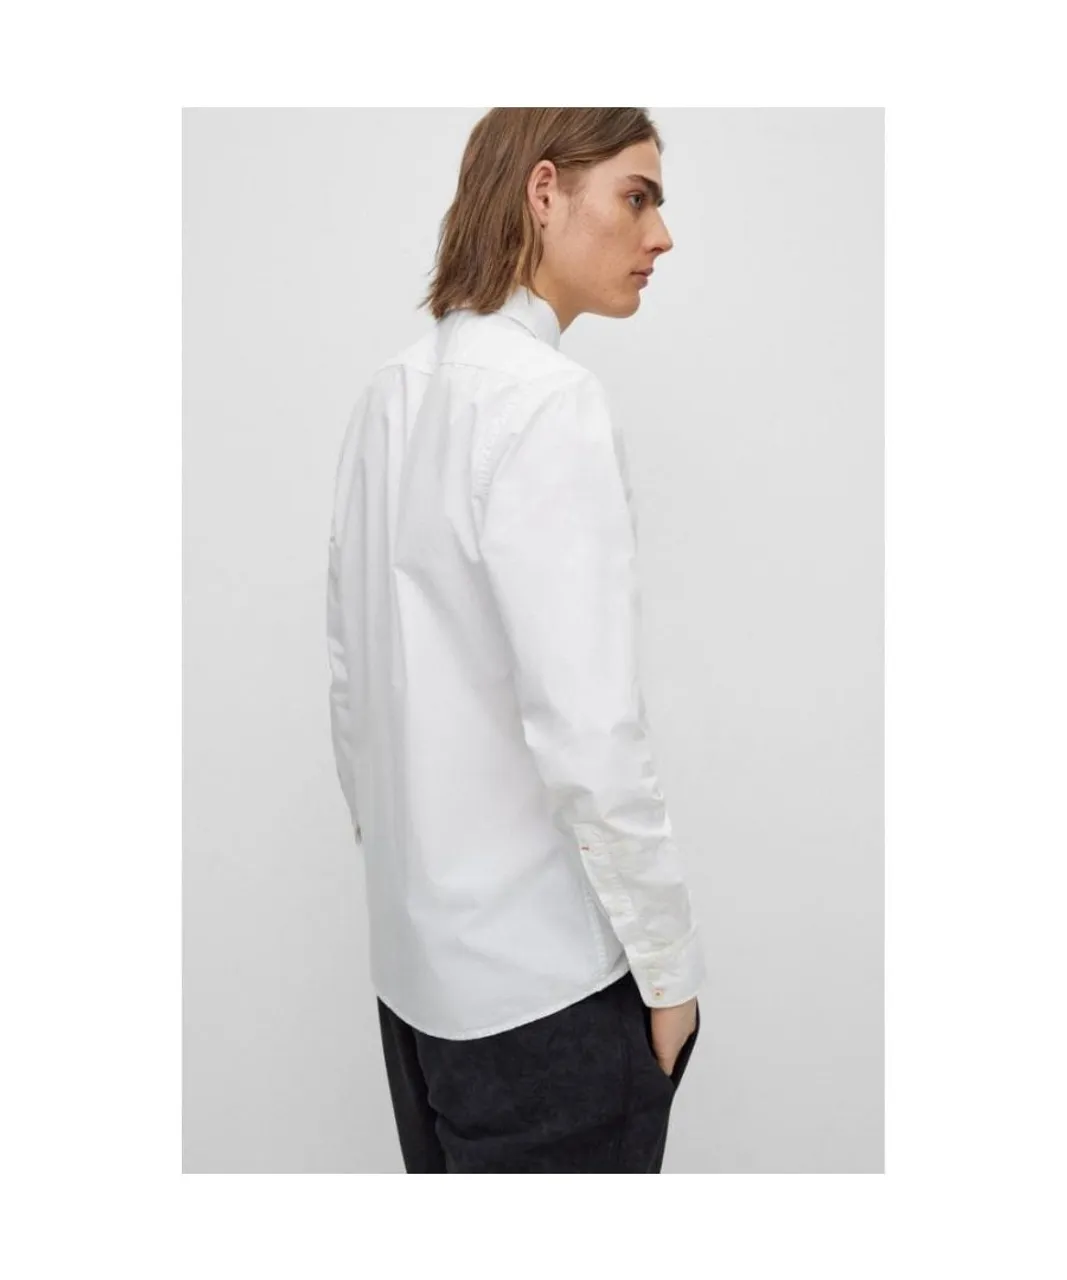 Boss Orange Relegant 6 Mens Regular Fit Long Sleeve Organic Cotton Poplin Shirt - White